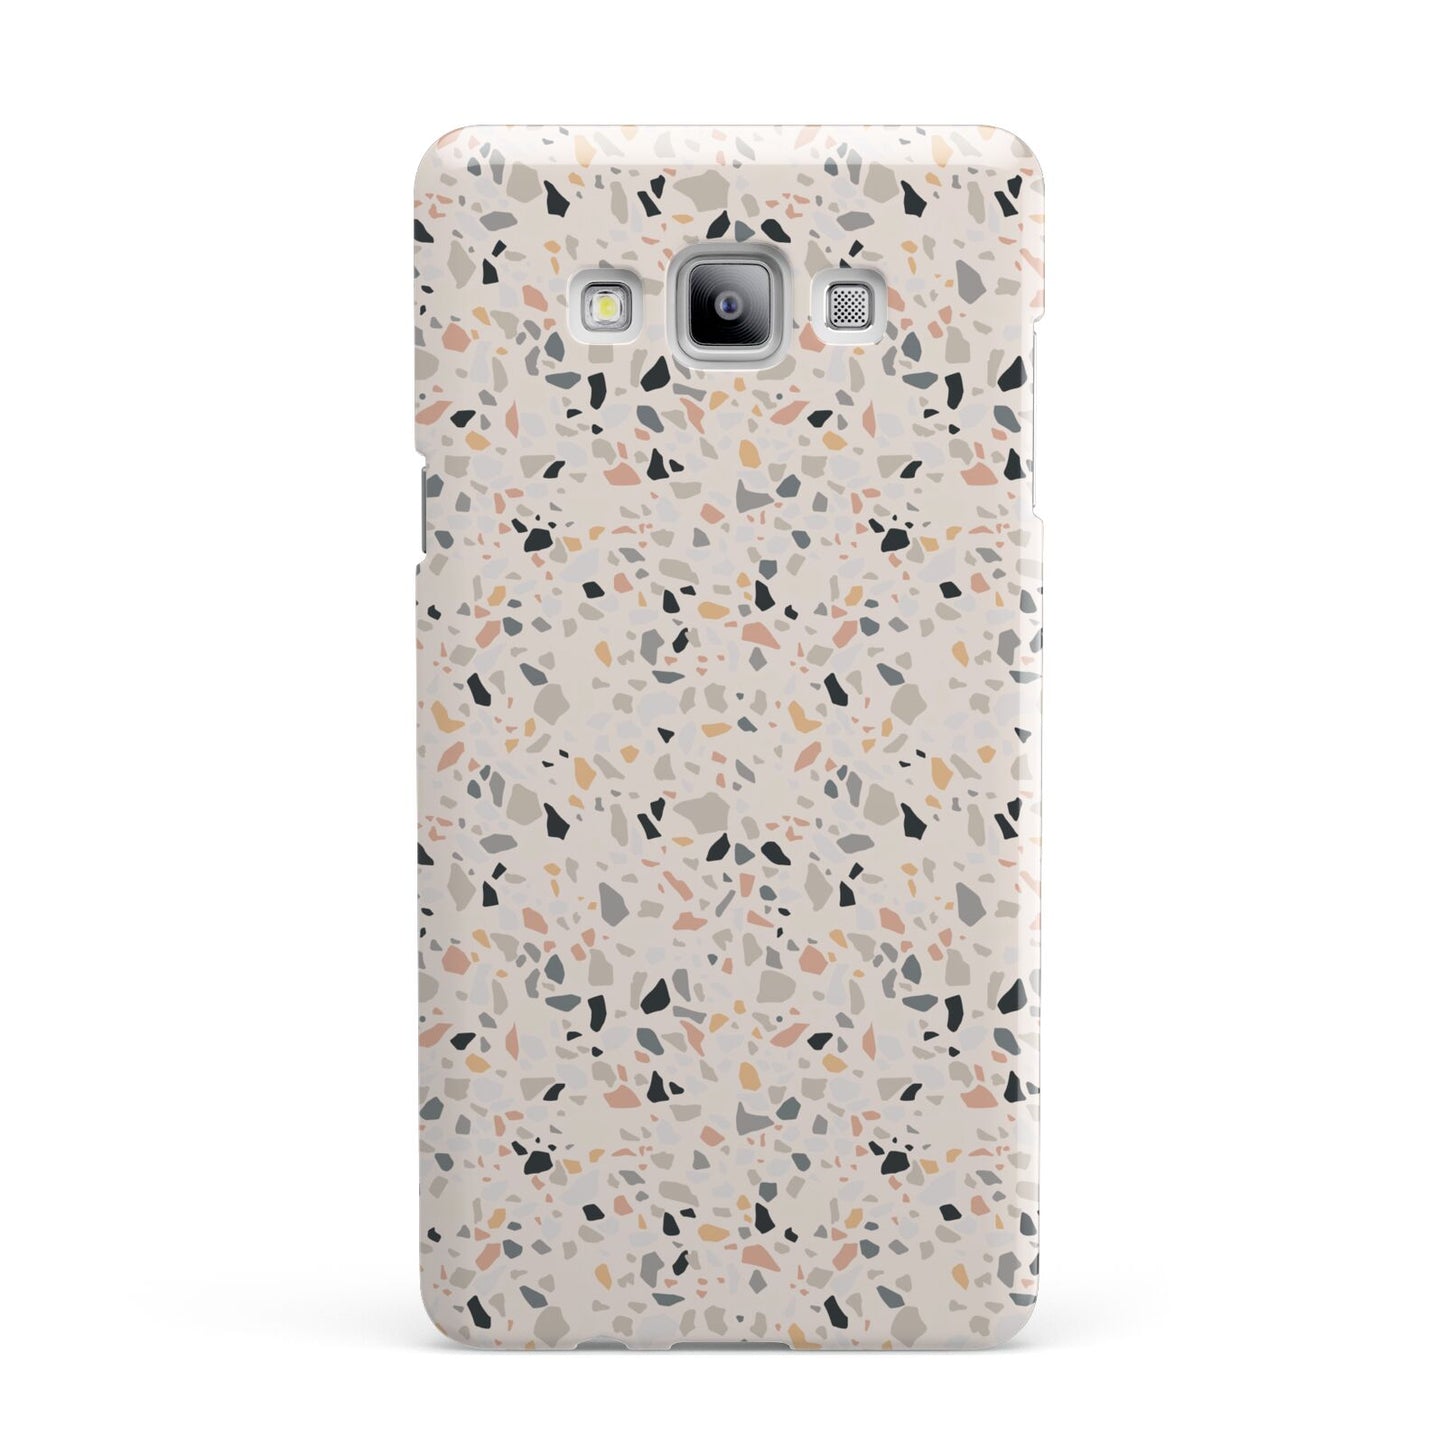 Terrazzo Stone Samsung Galaxy A7 2015 Case